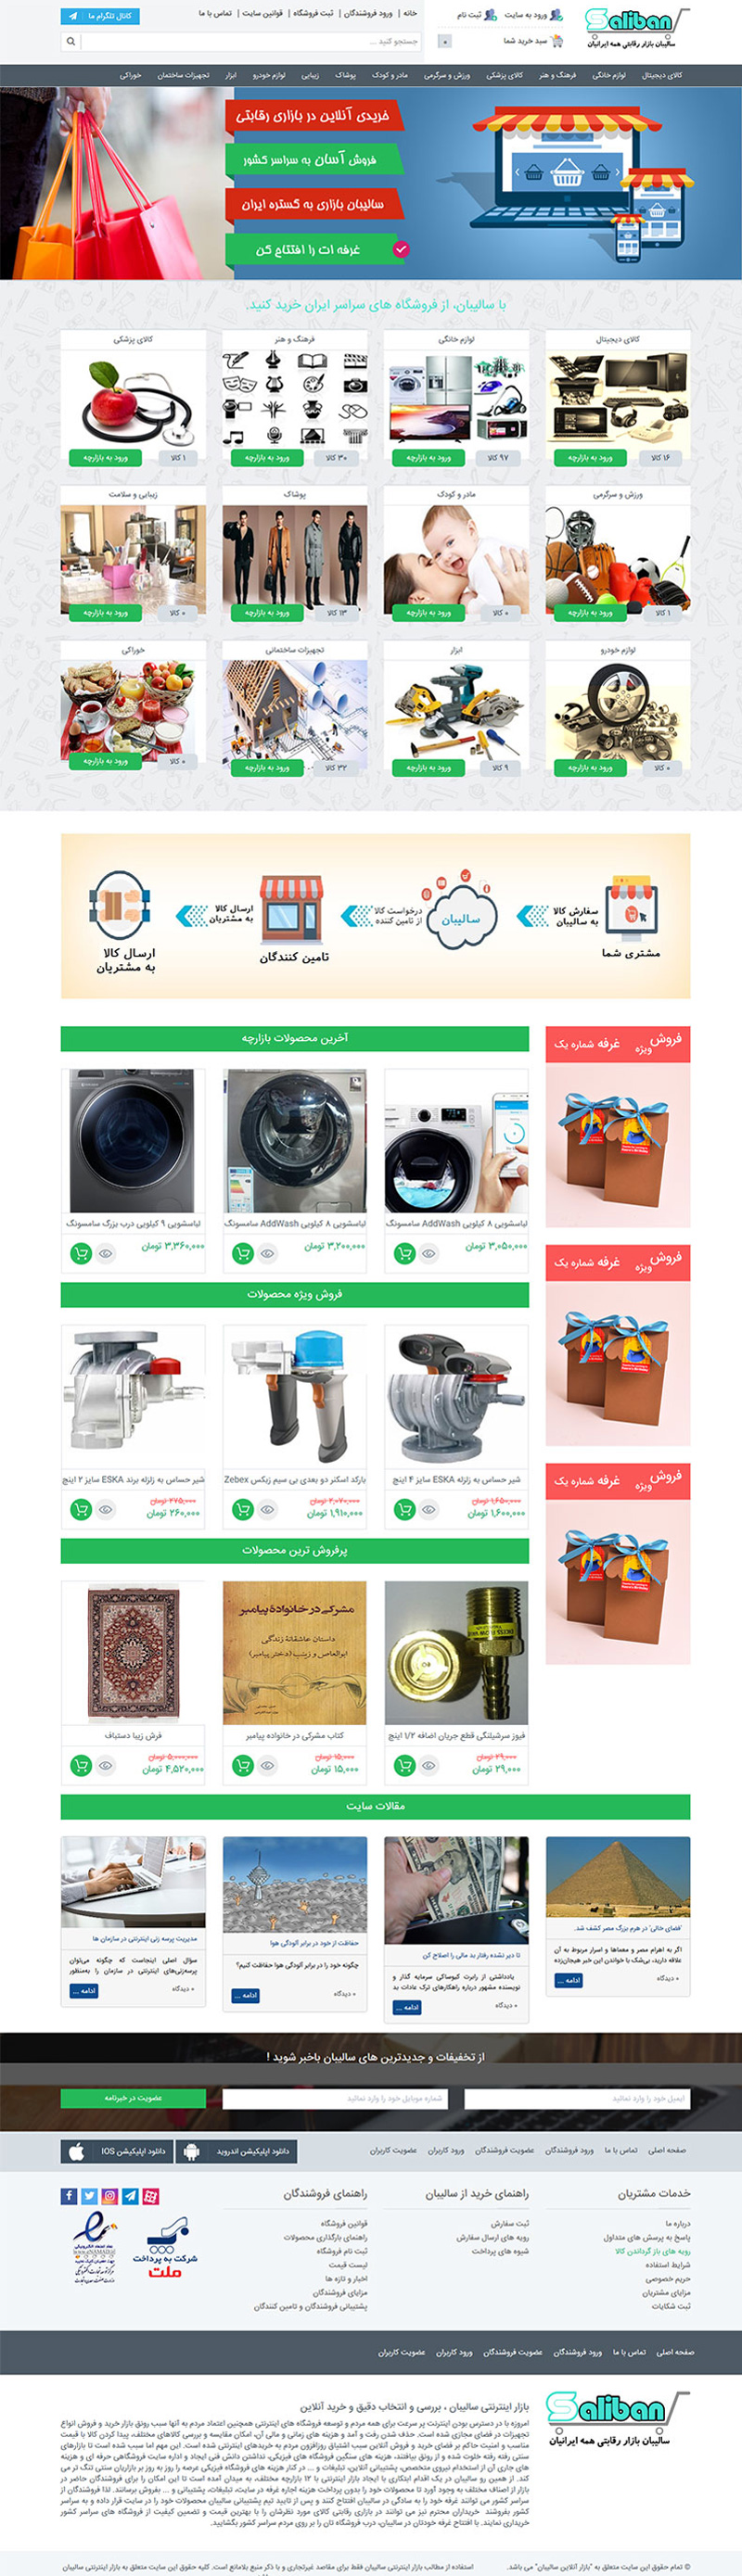 طراحی سایت بازارچه آنلاین سالیبان